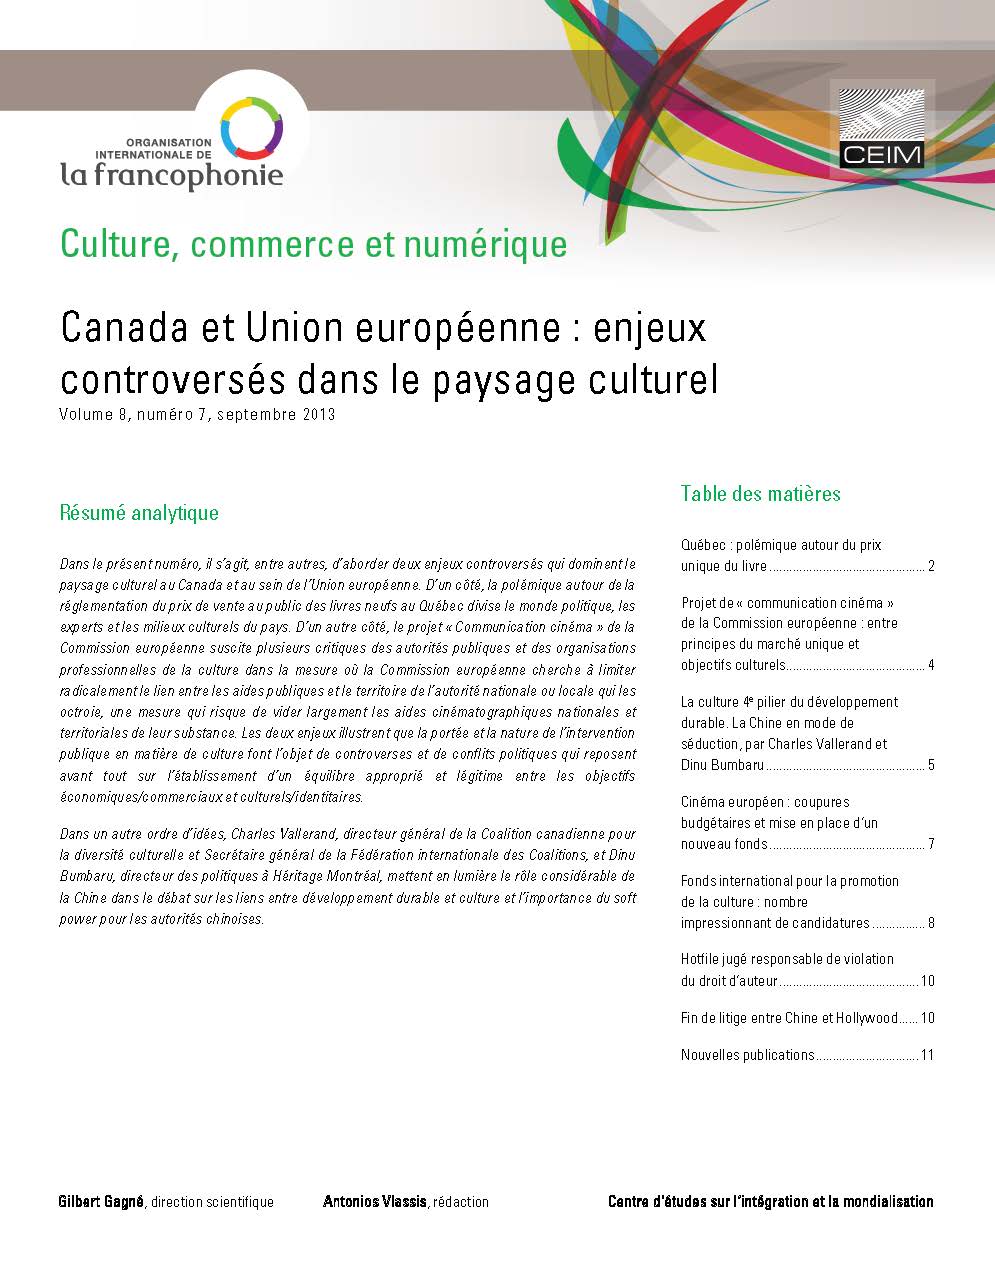 Canada et Union européenne : enjeux controversés dans le paysage culturel 